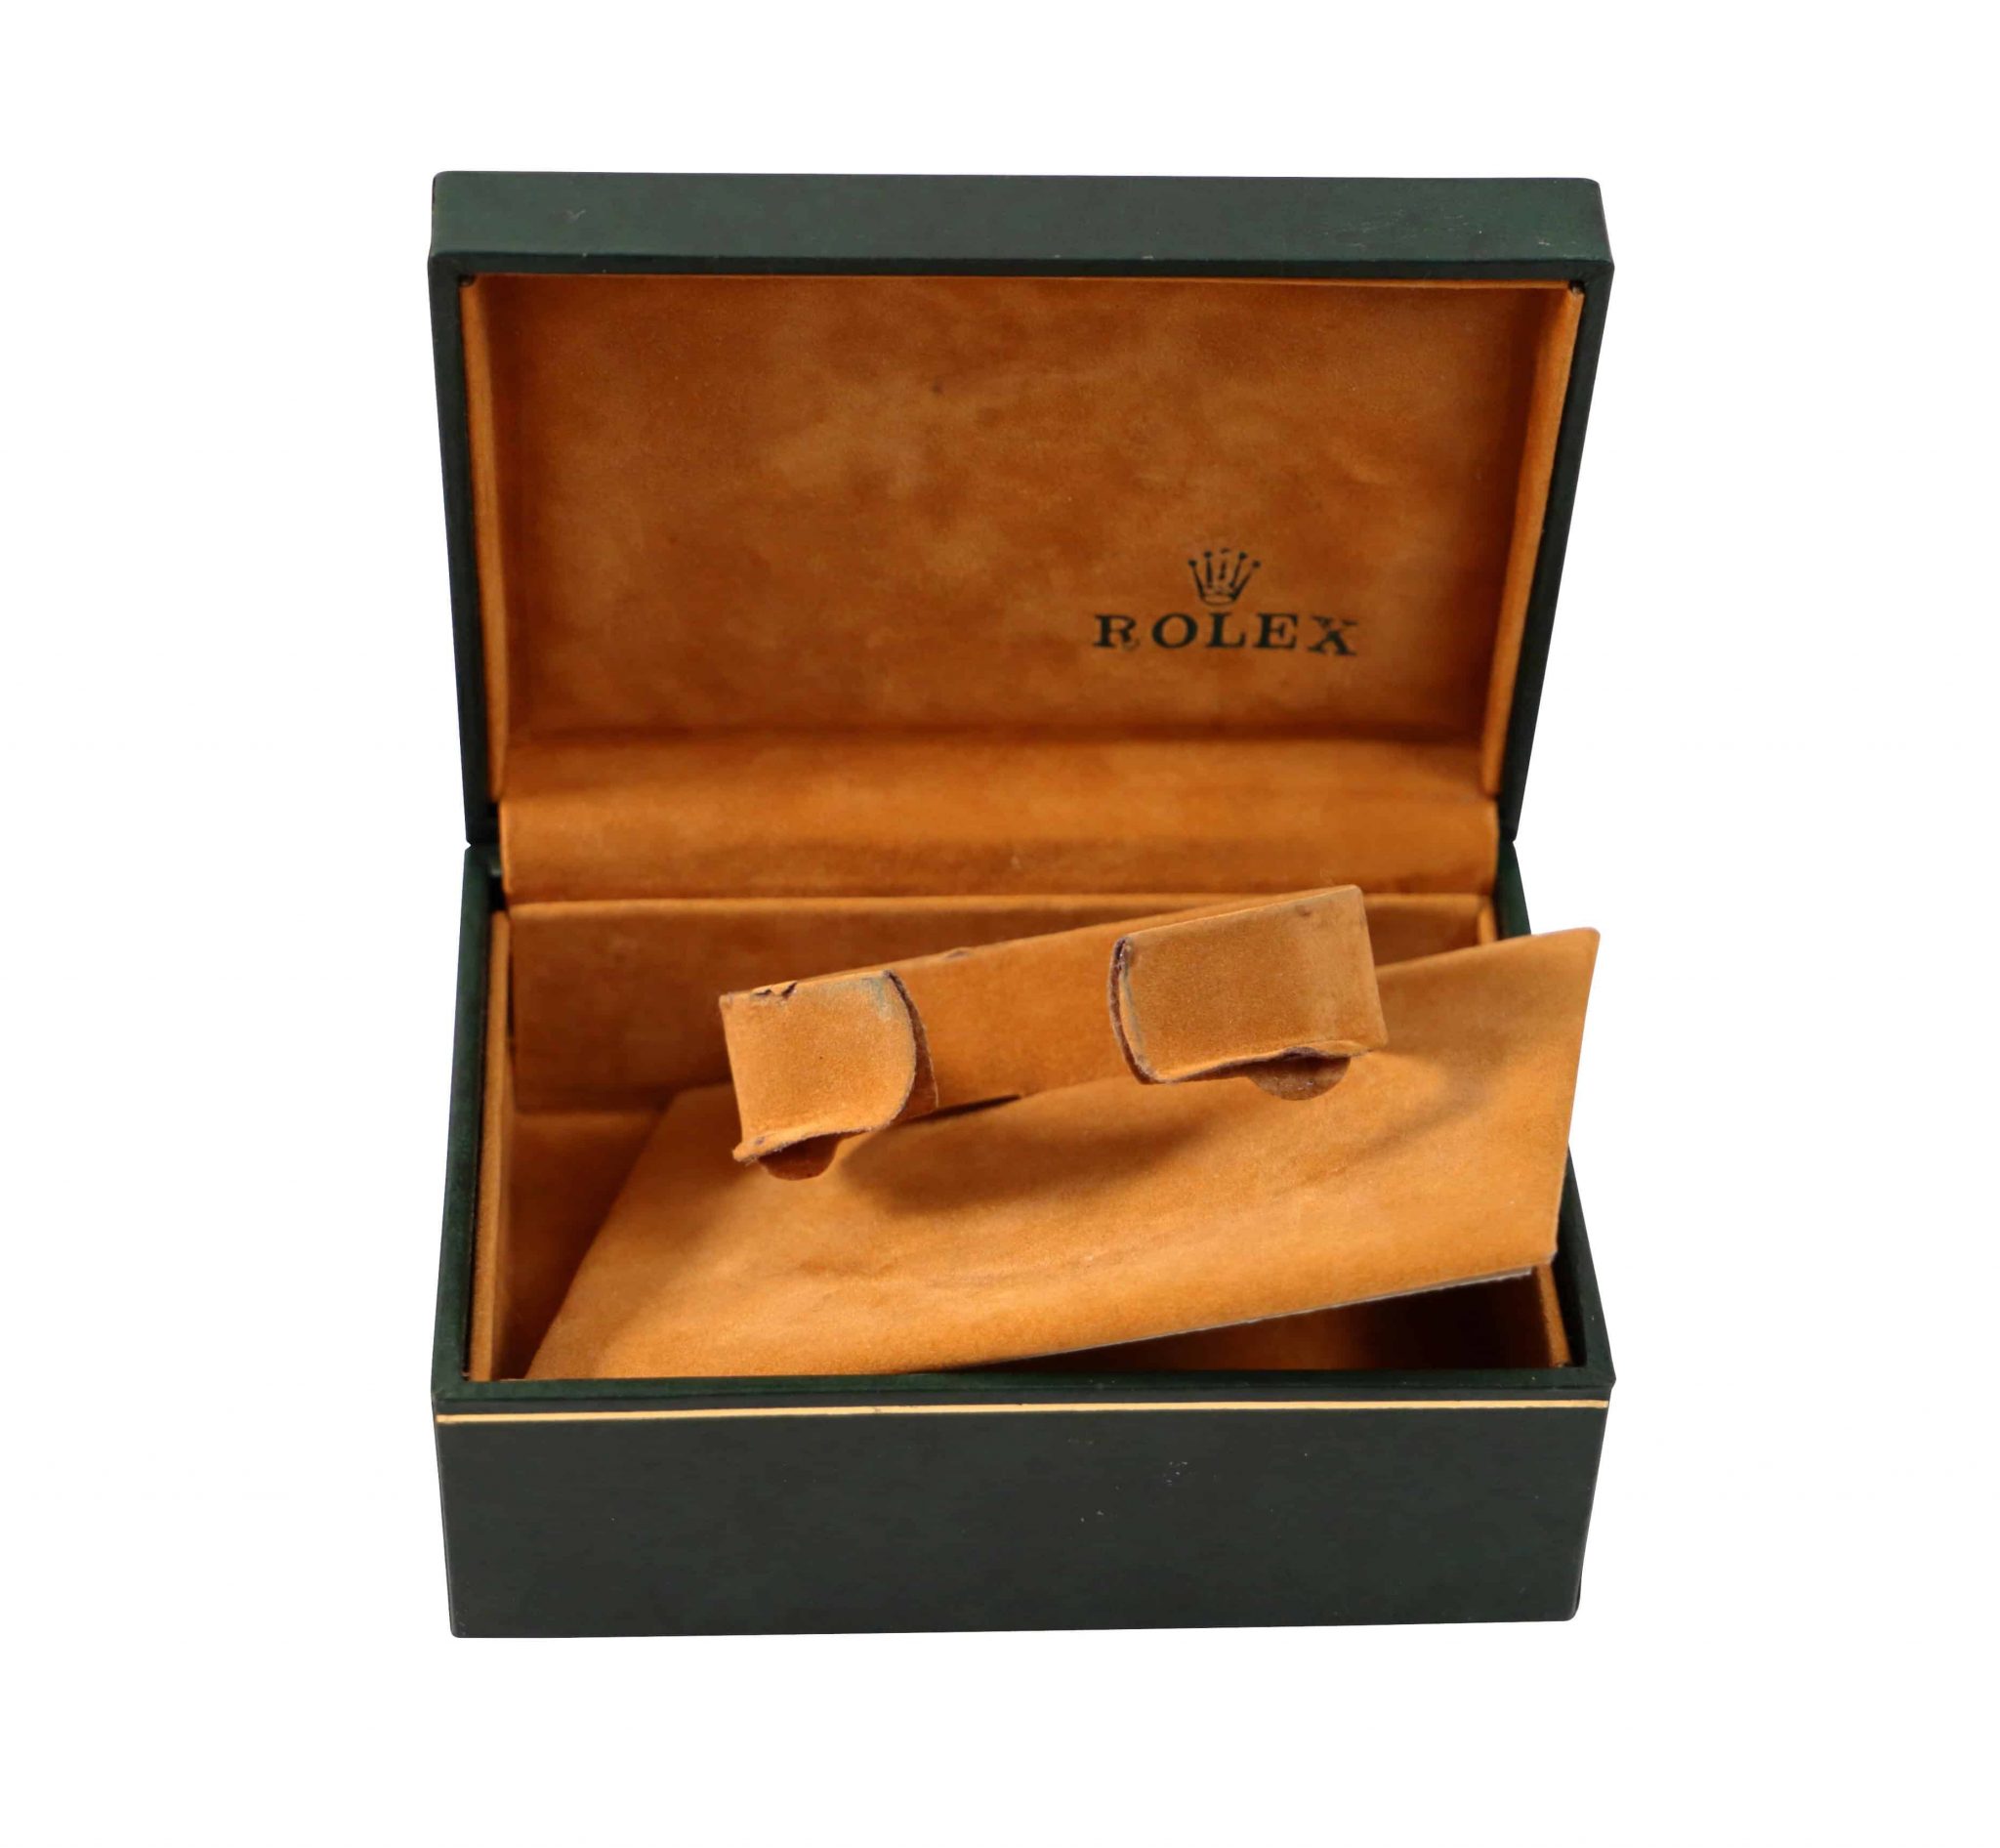 Rolex Watch Presentation Box Vintage - Rare Watch Parts